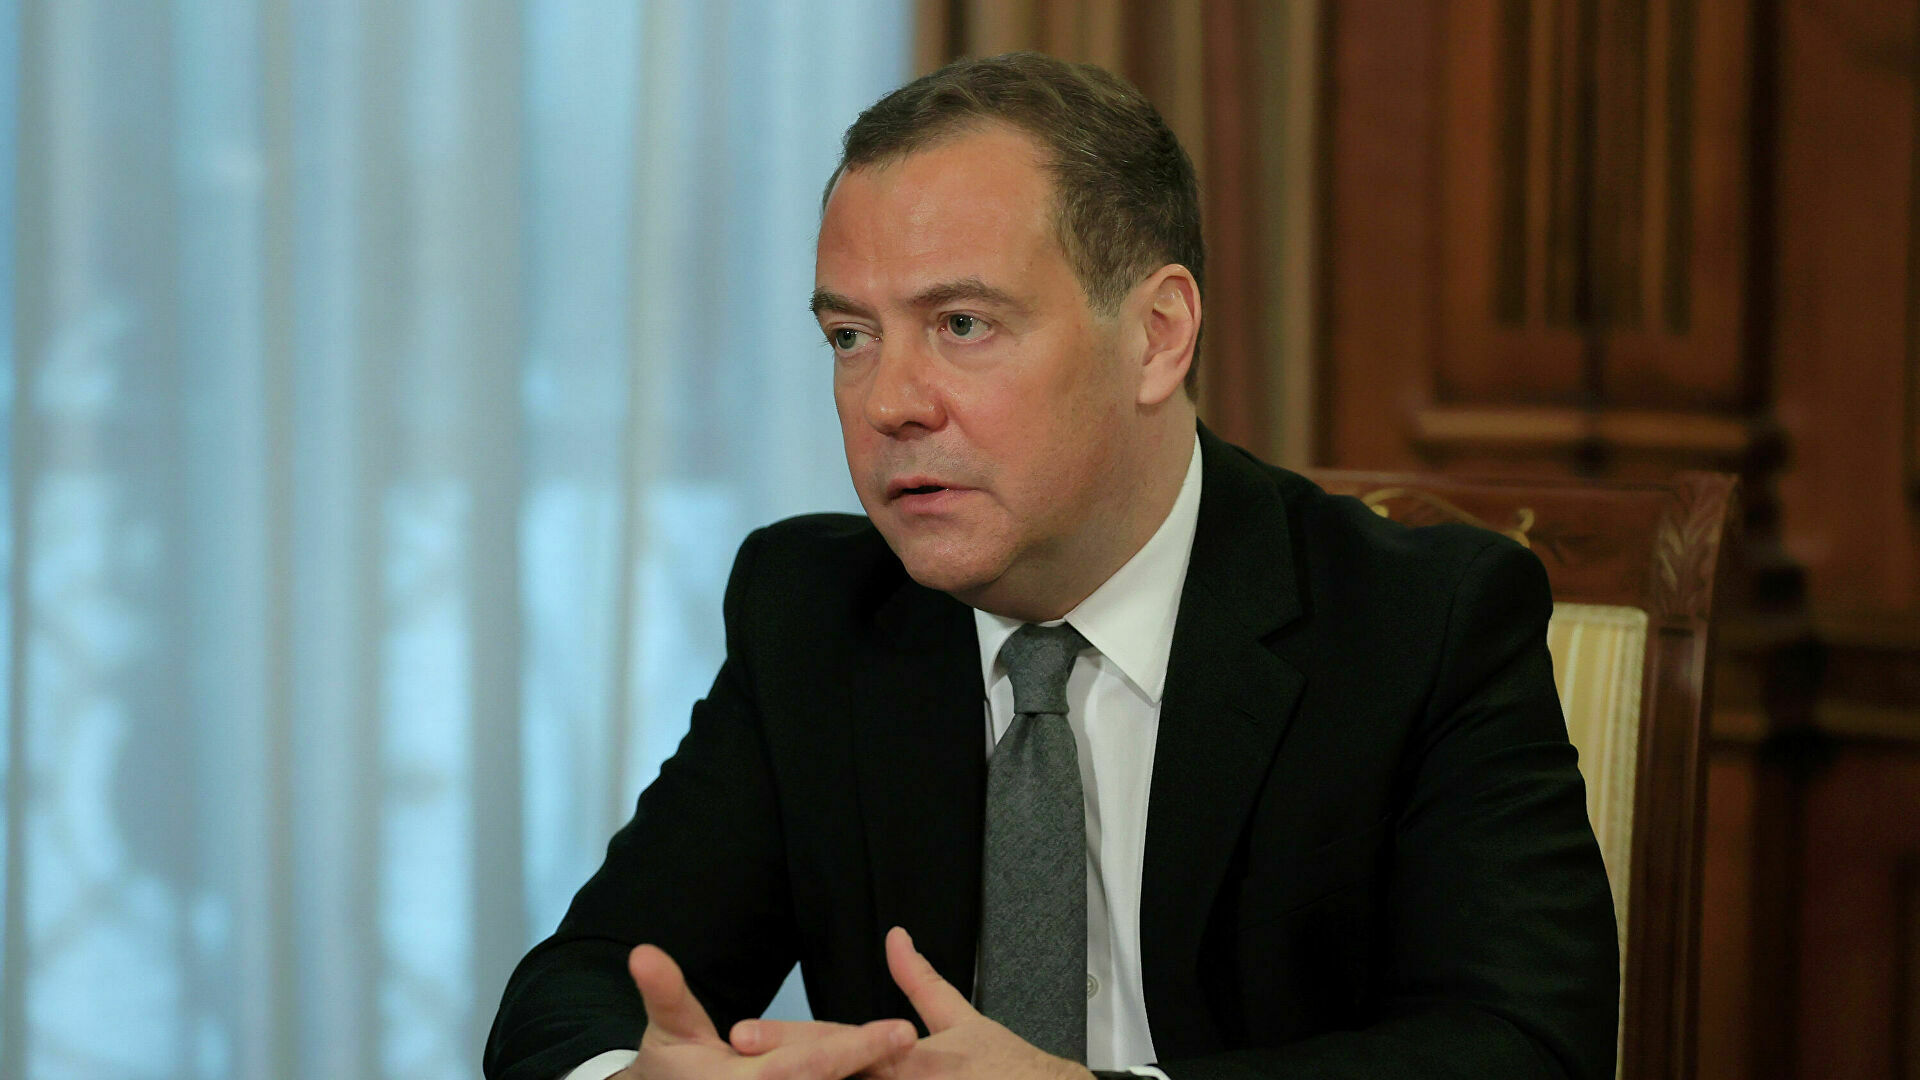 Дмитрий Медведев рассказал о "знатно засранных" мозгах европейцев